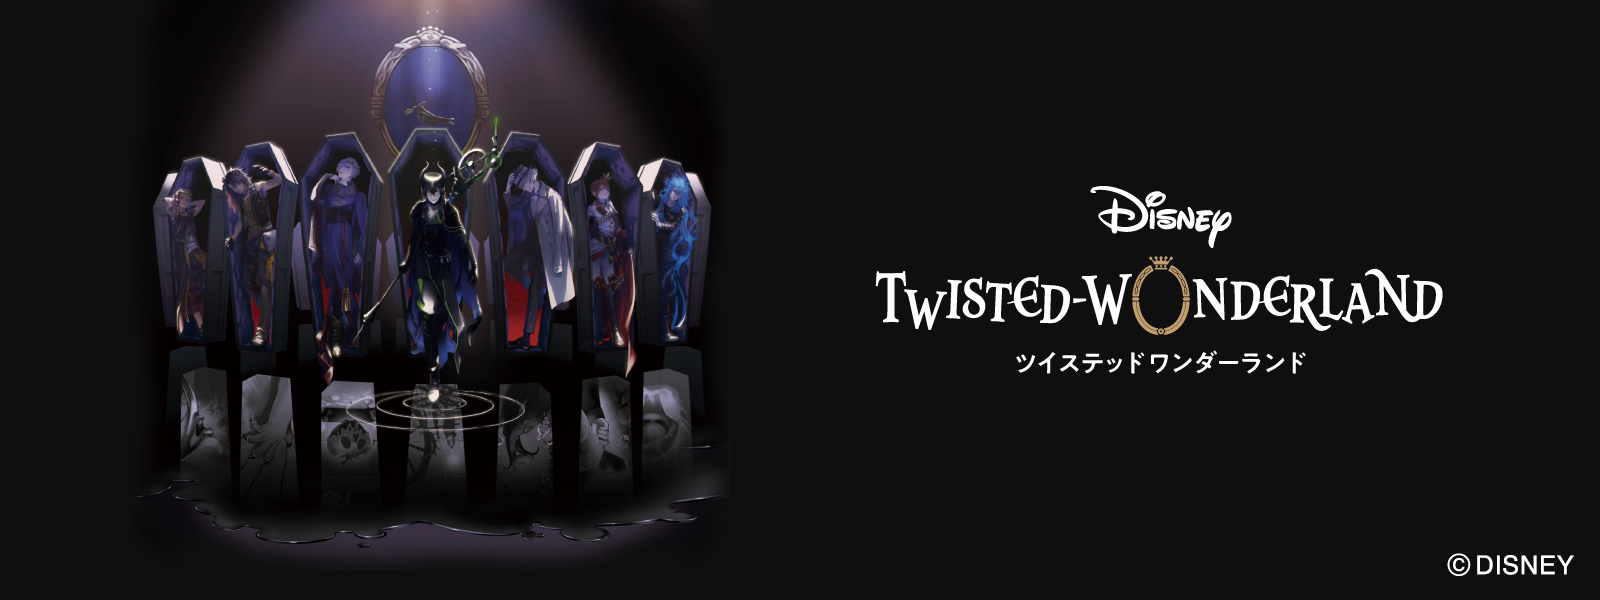 Twisted Wonderland banner